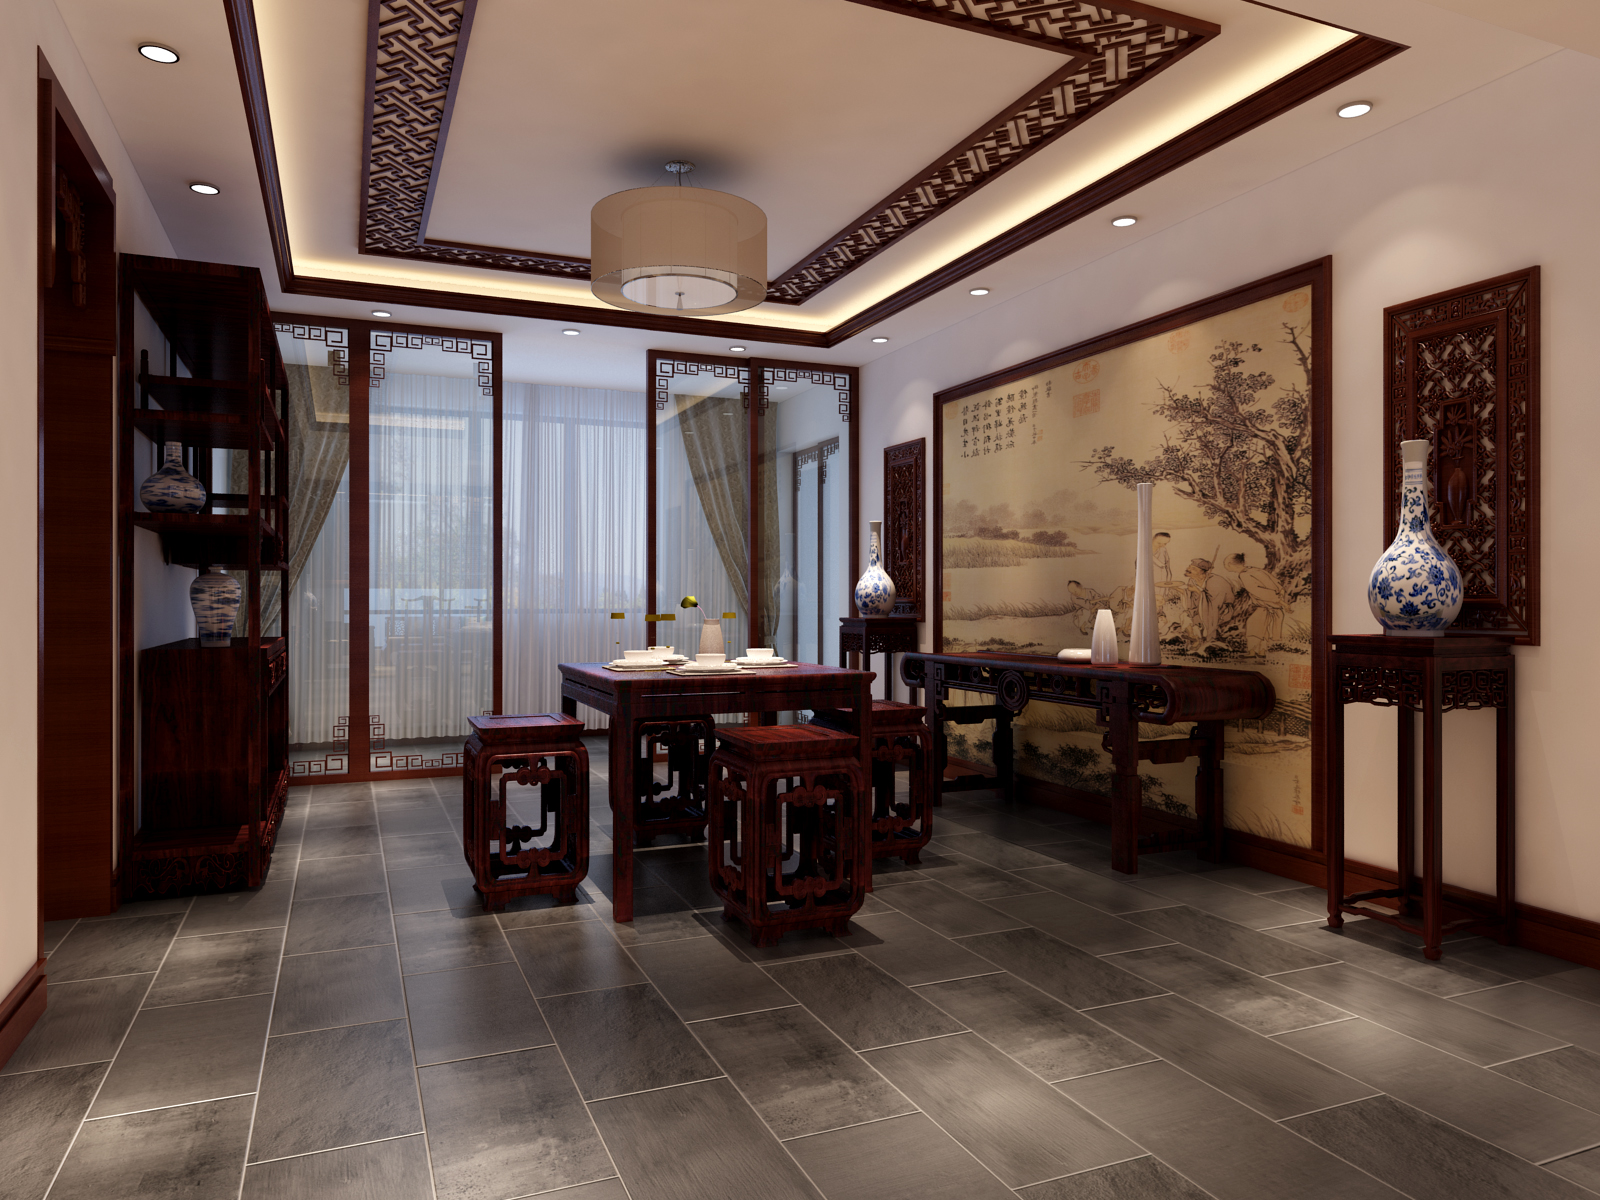 三居 中式 客厅 餐厅 休闲区 卧室 儿童房 玄关 餐厅图片来自实创装饰晶晶在170平3居室中式纯在设计的分享